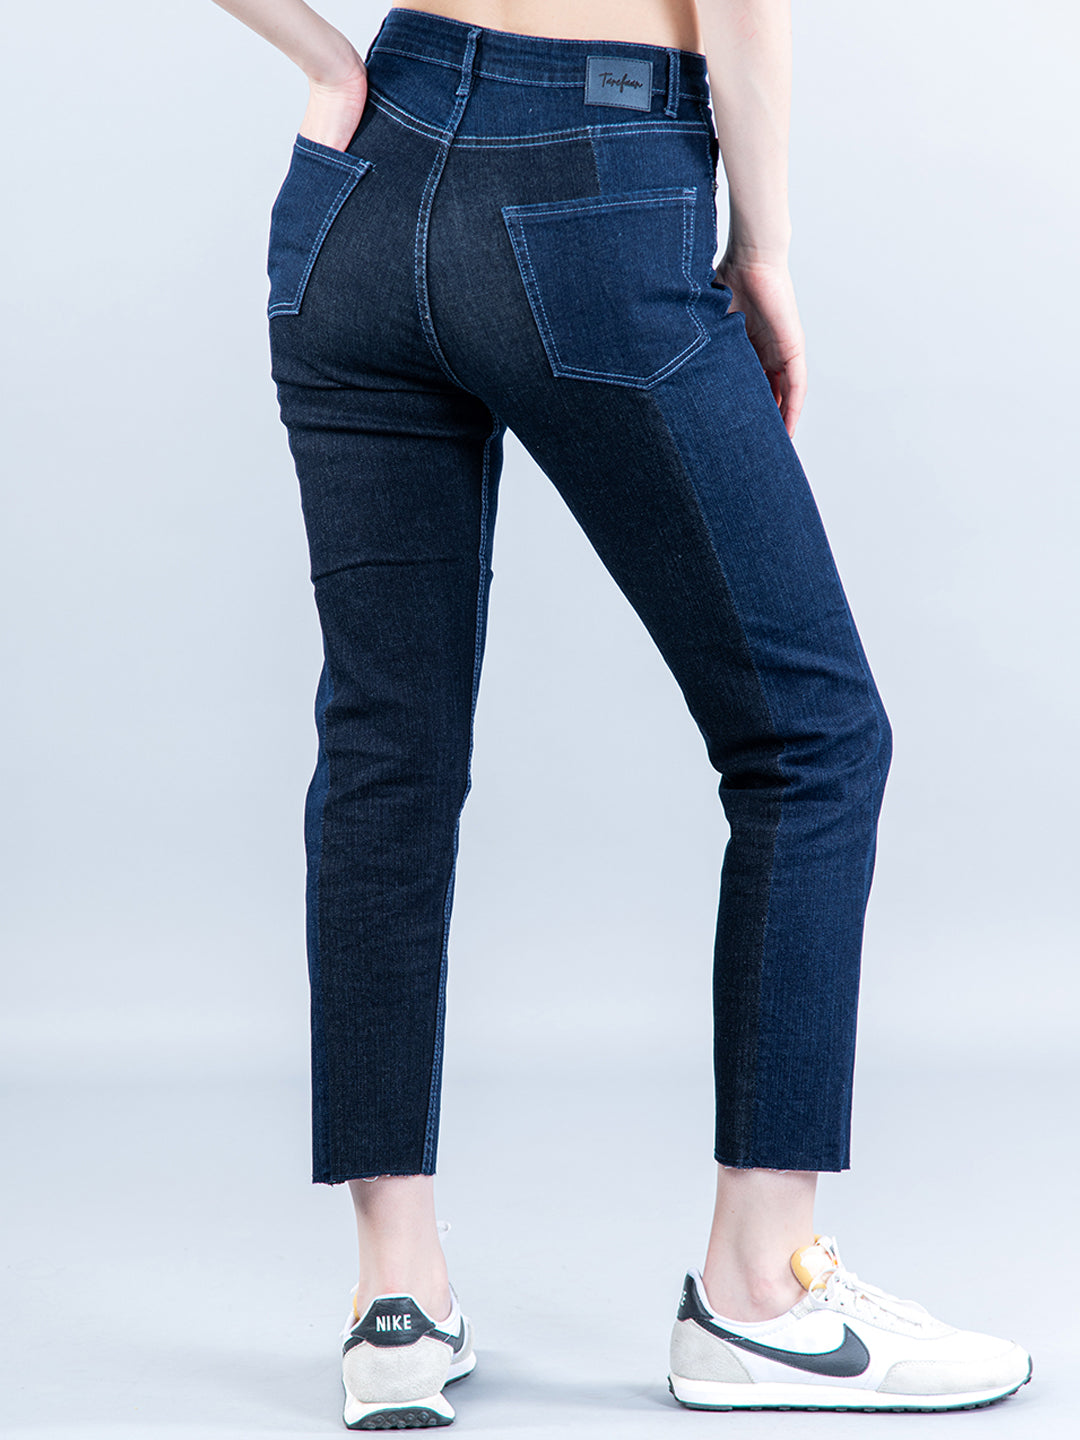 trending jeans for women